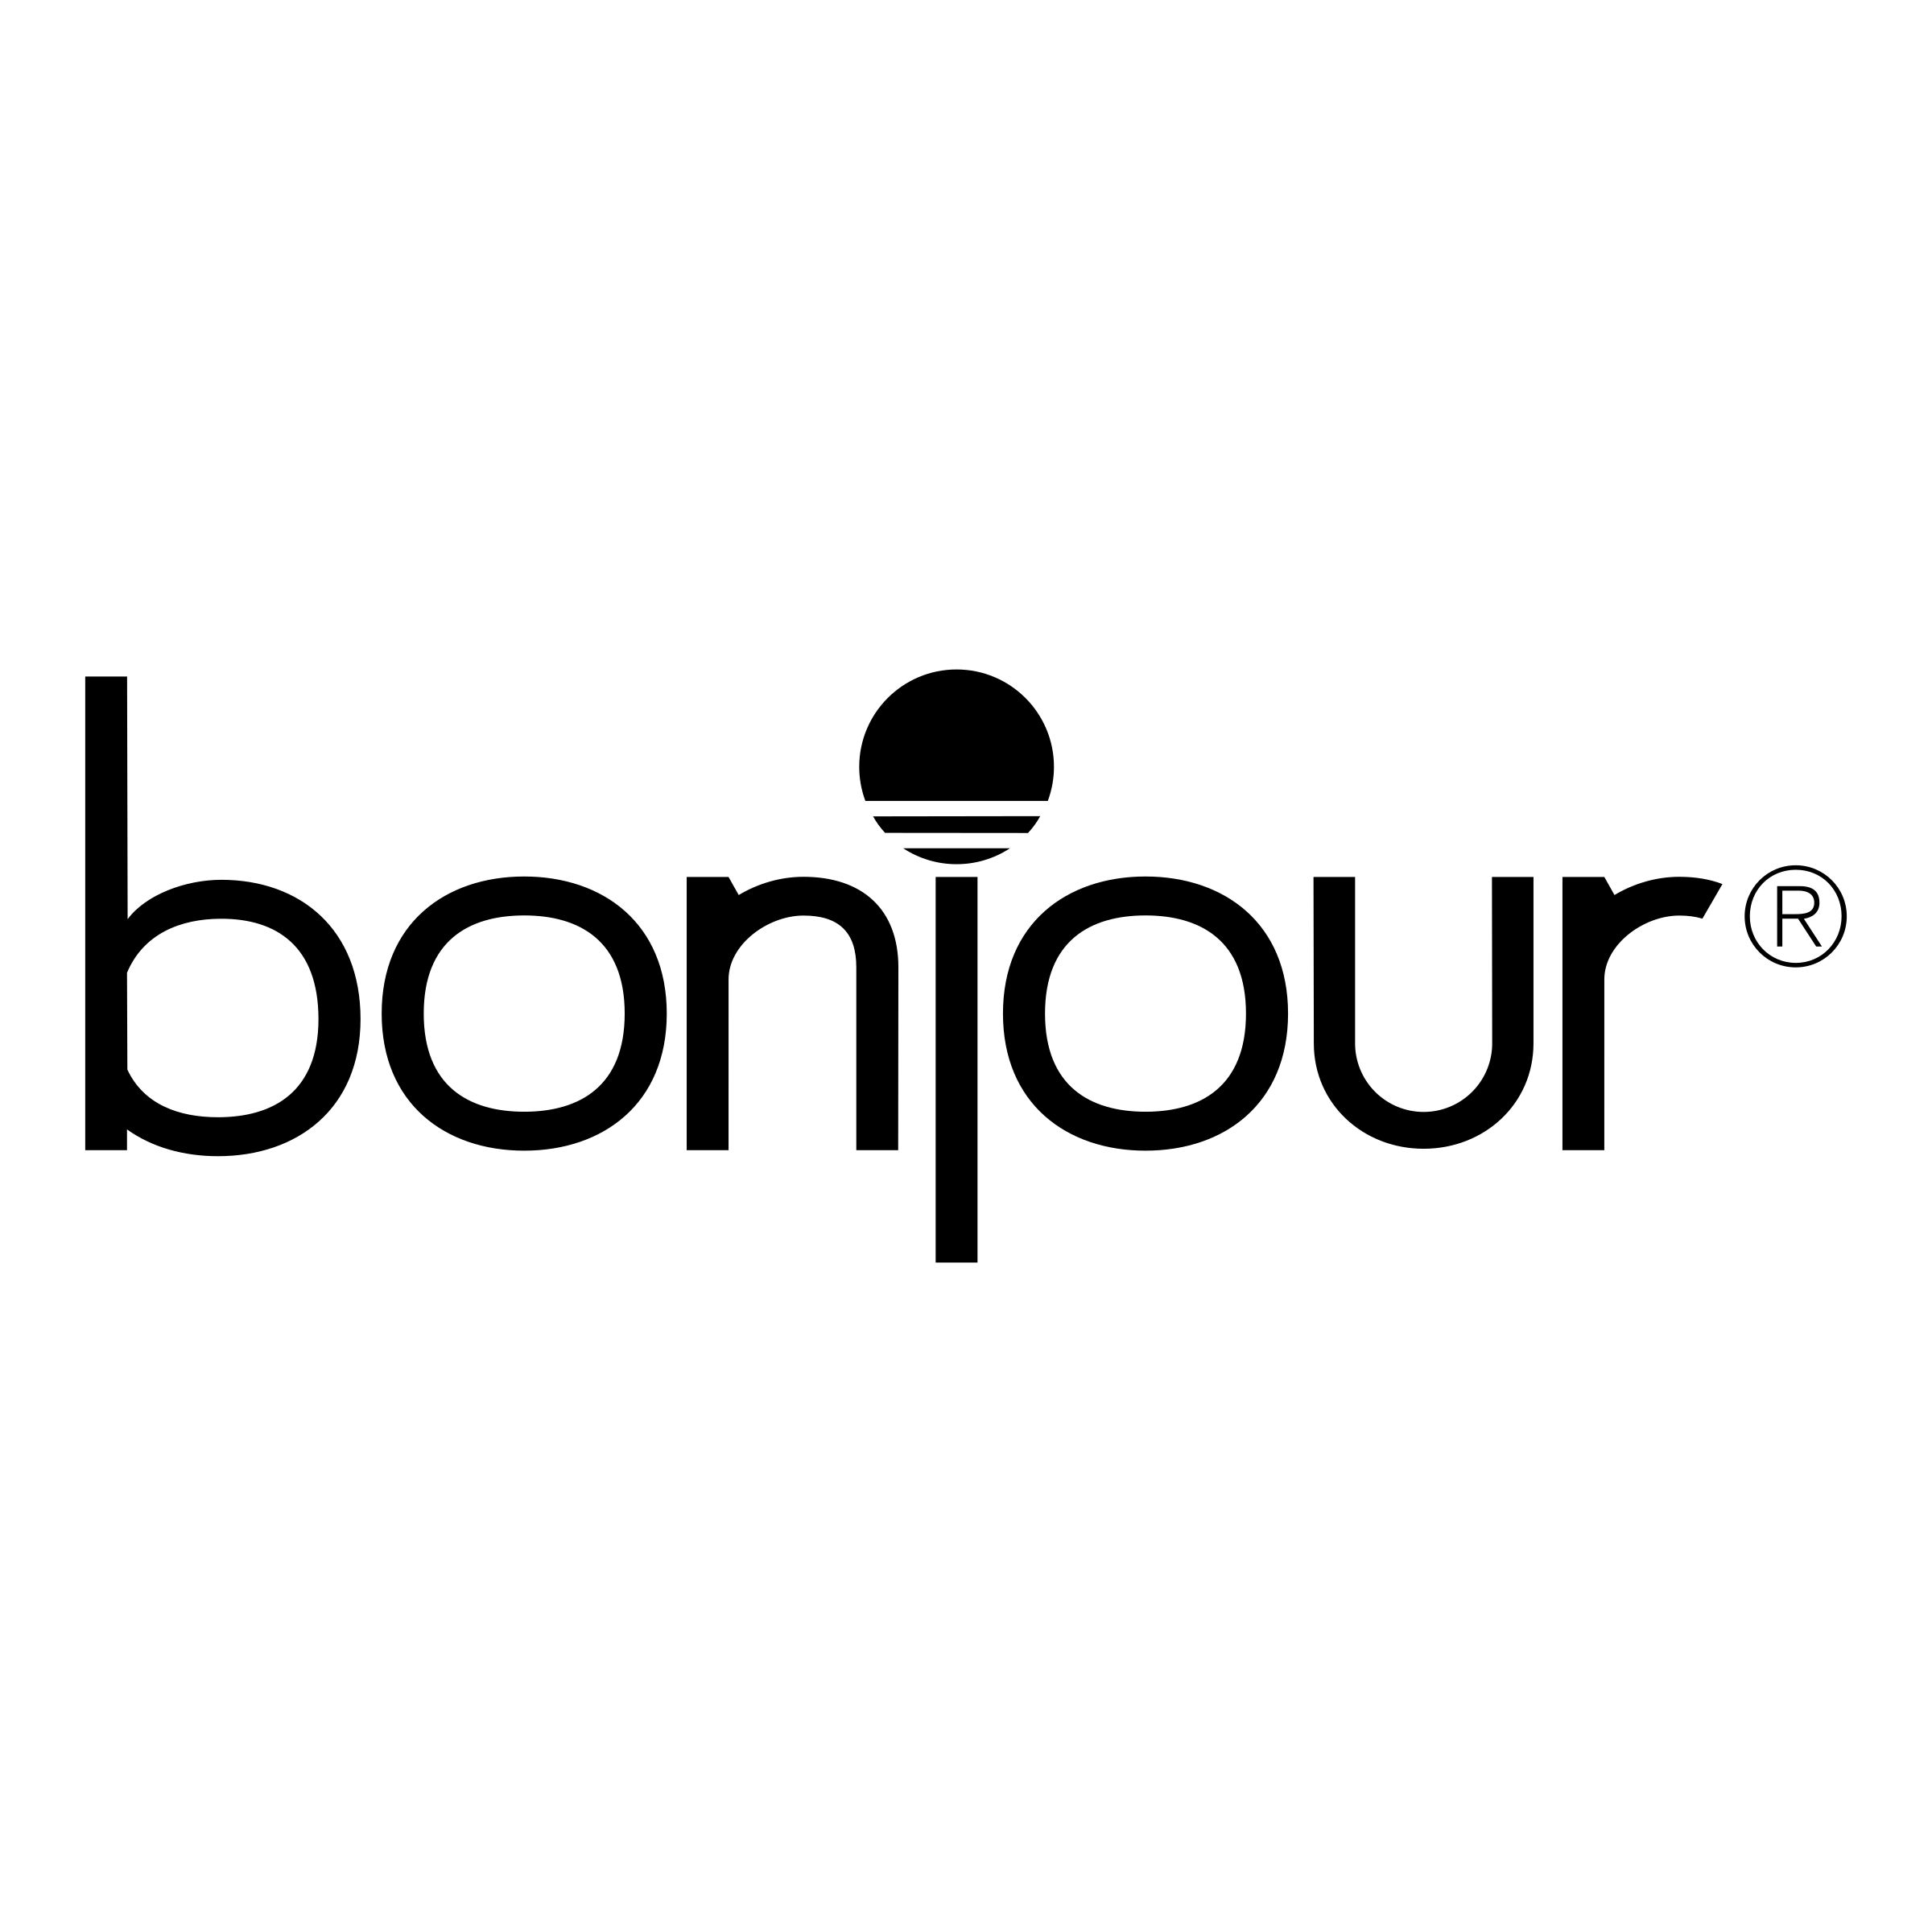 Bonjour Logo - Bonjour 01 Logo PNG Transparent & SVG Vector - Freebie Supply